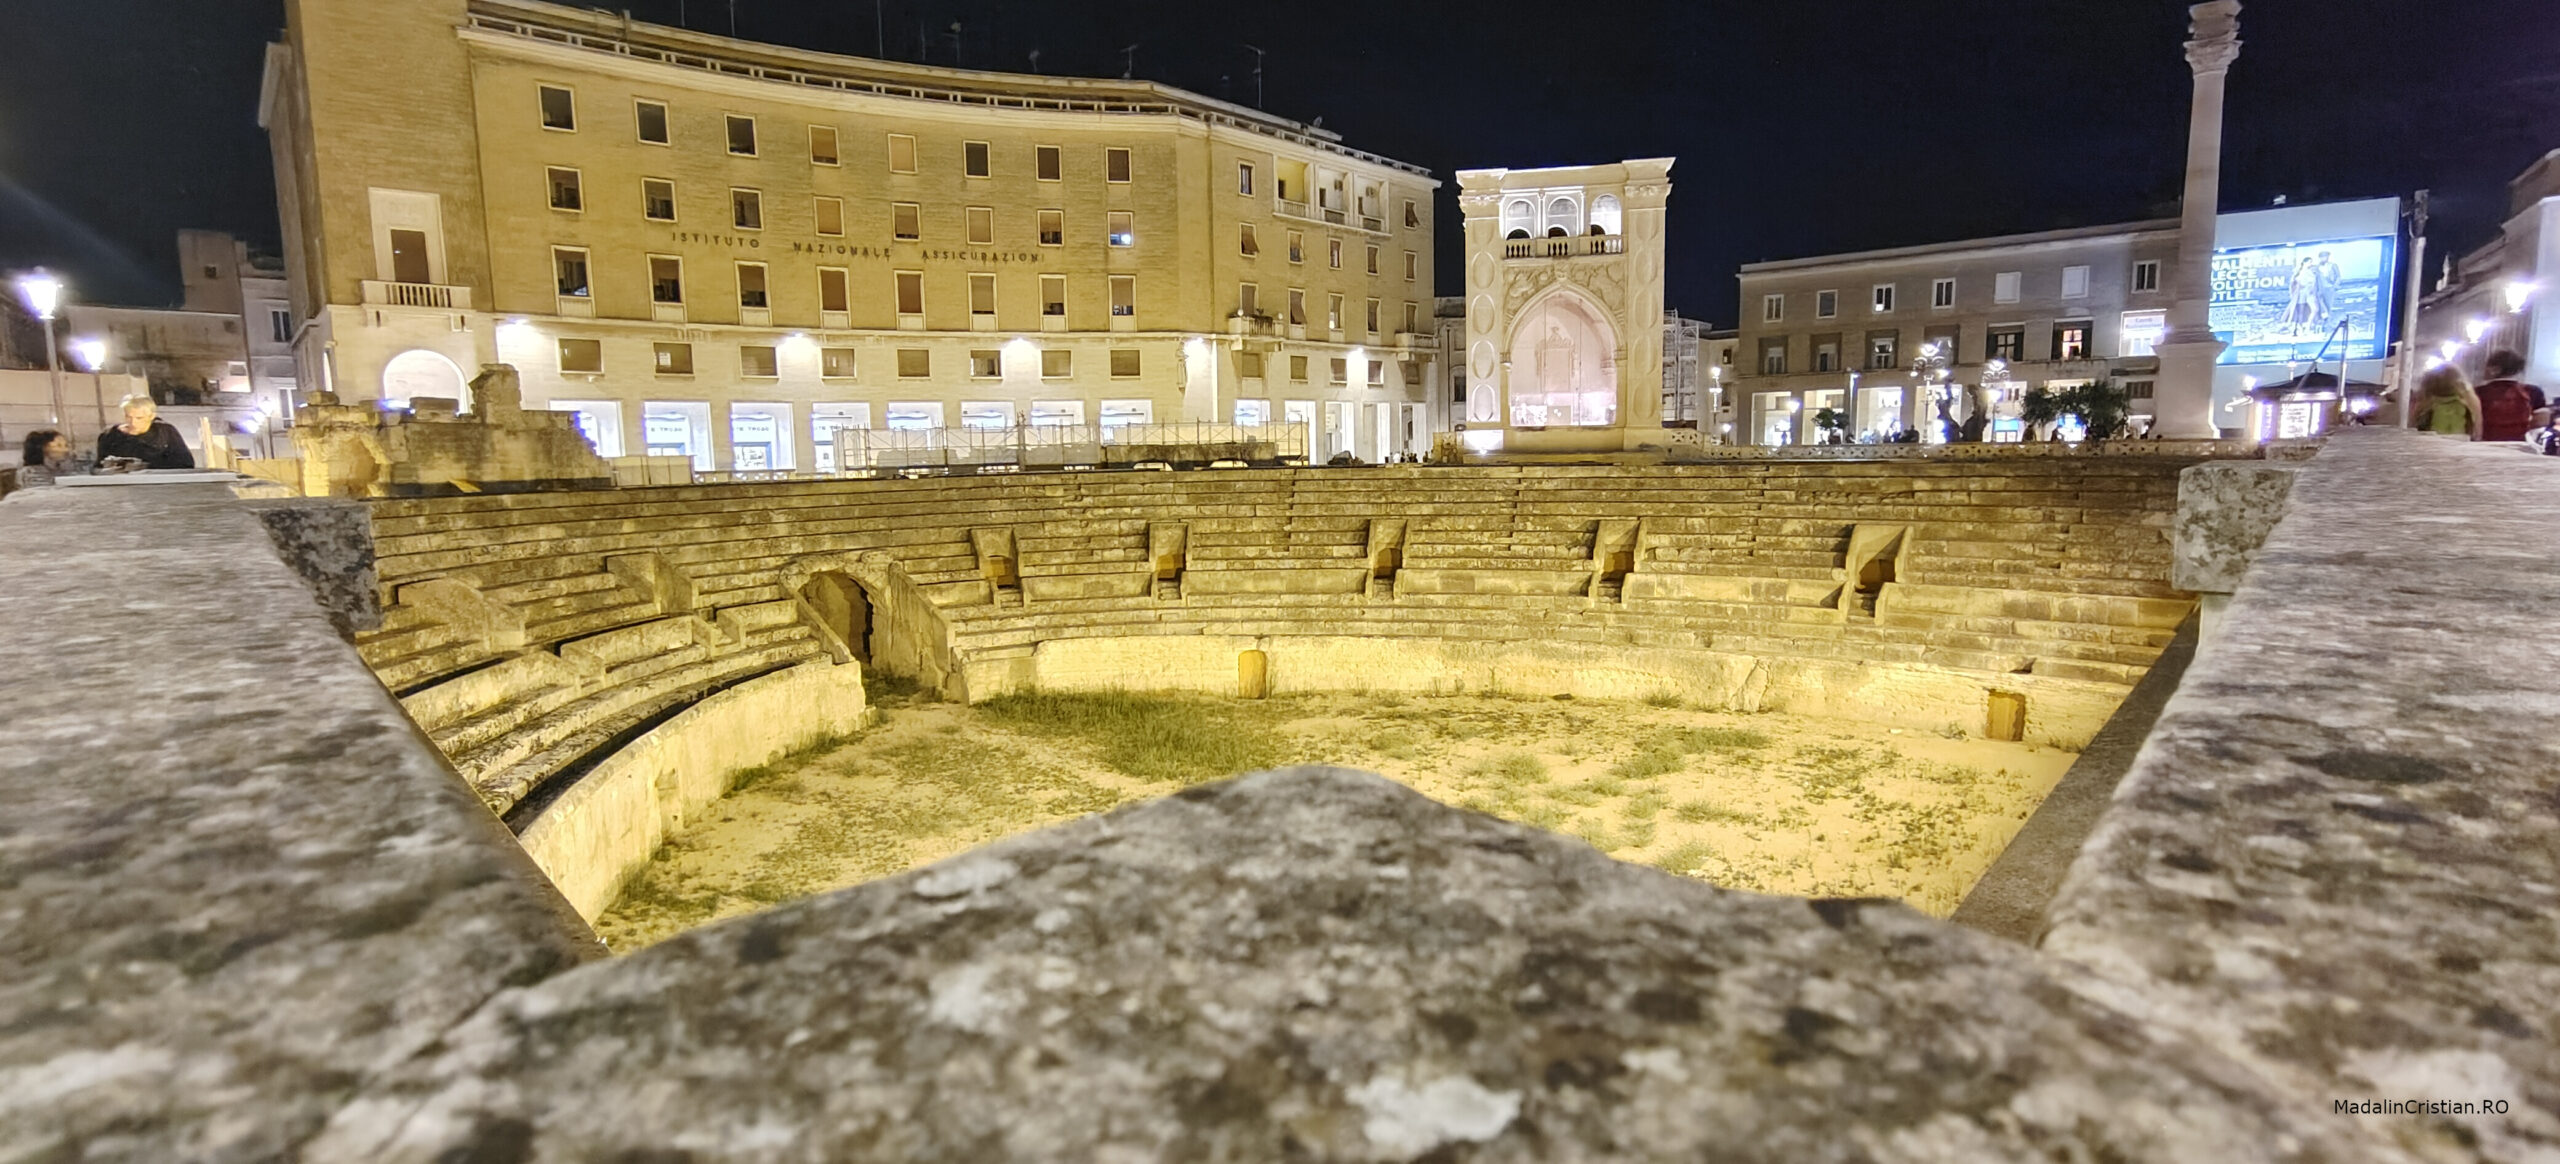 Amfiteatru Lecce